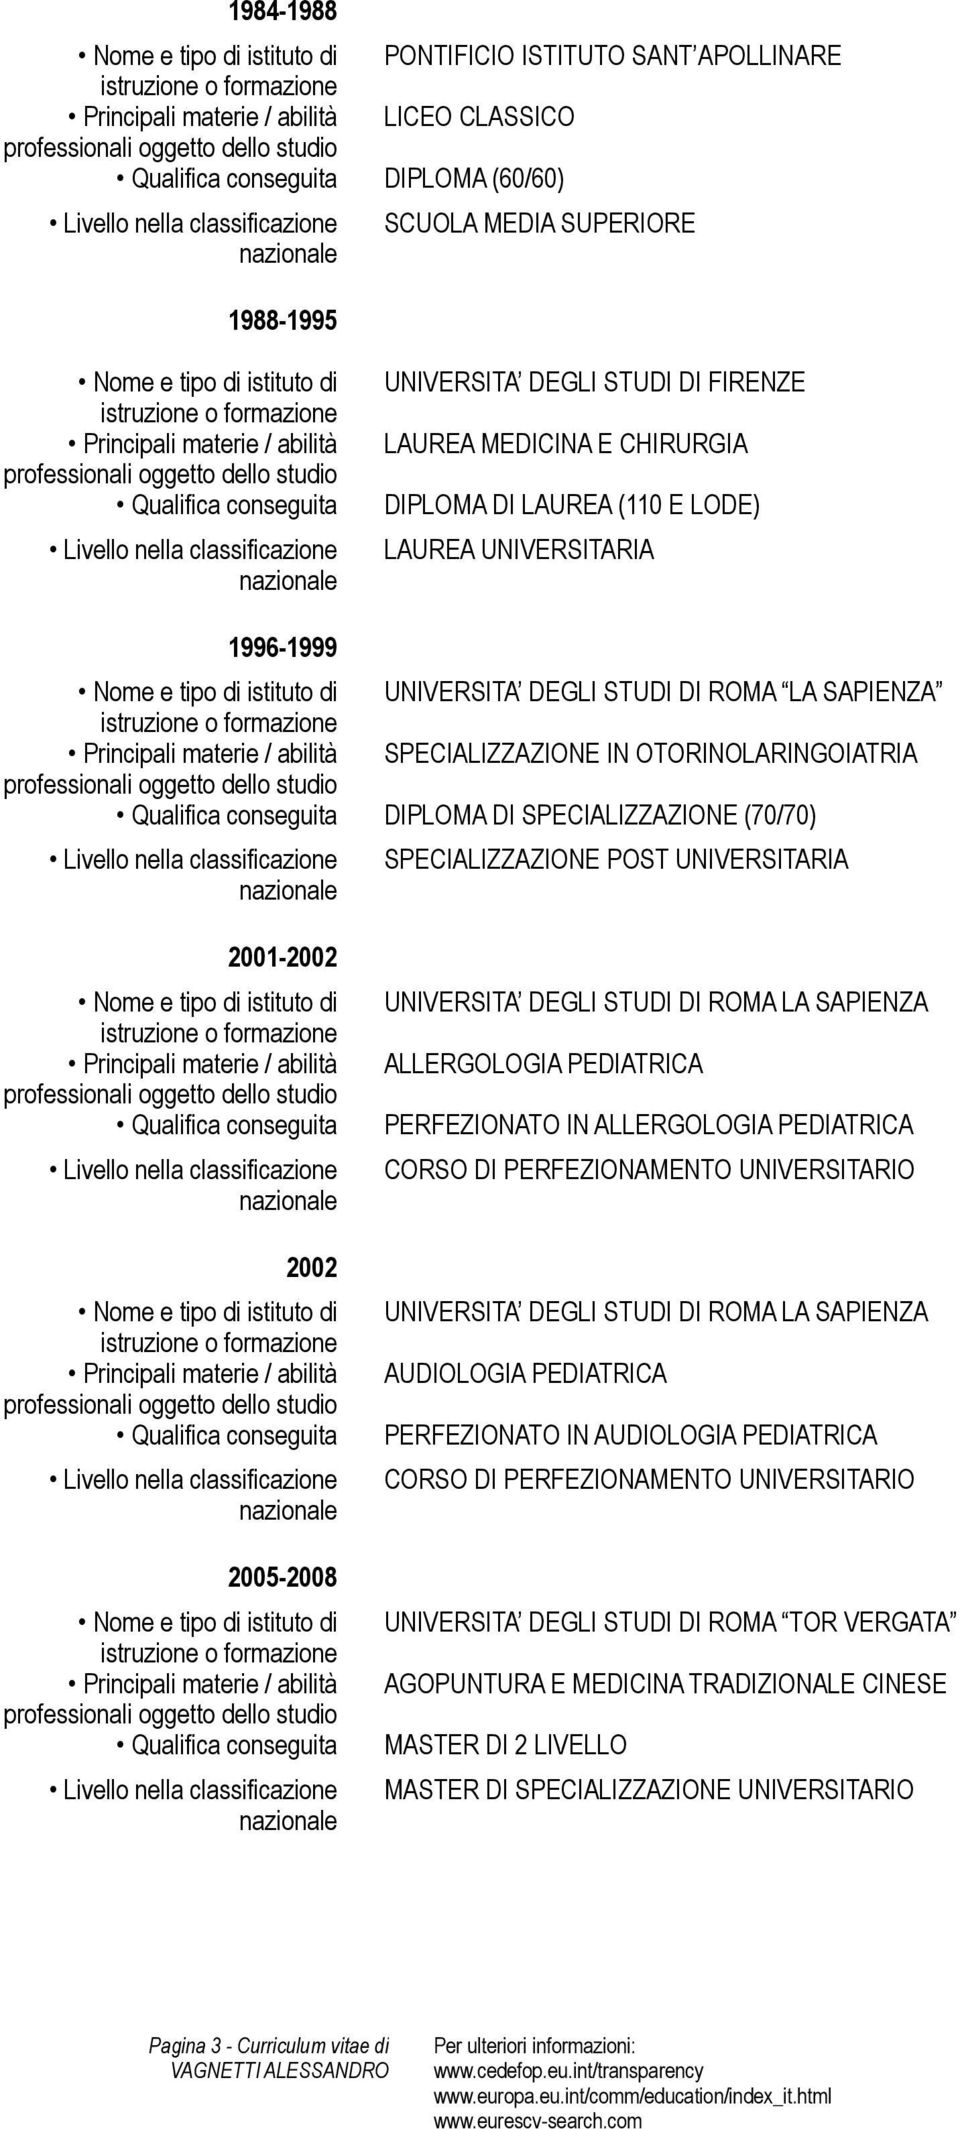 2001-2002 2002 2005-2008 UNIVERSITA DEGLI STUDI DI ROMA LA SAPIENZA ALLERGOLOGIA PEDIATRICA PERFEZIONATO IN ALLERGOLOGIA PEDIATRICA CORSO DI PERFEZIONAMENTO UNIVERSITARIO UNIVERSITA DEGLI STUDI DI